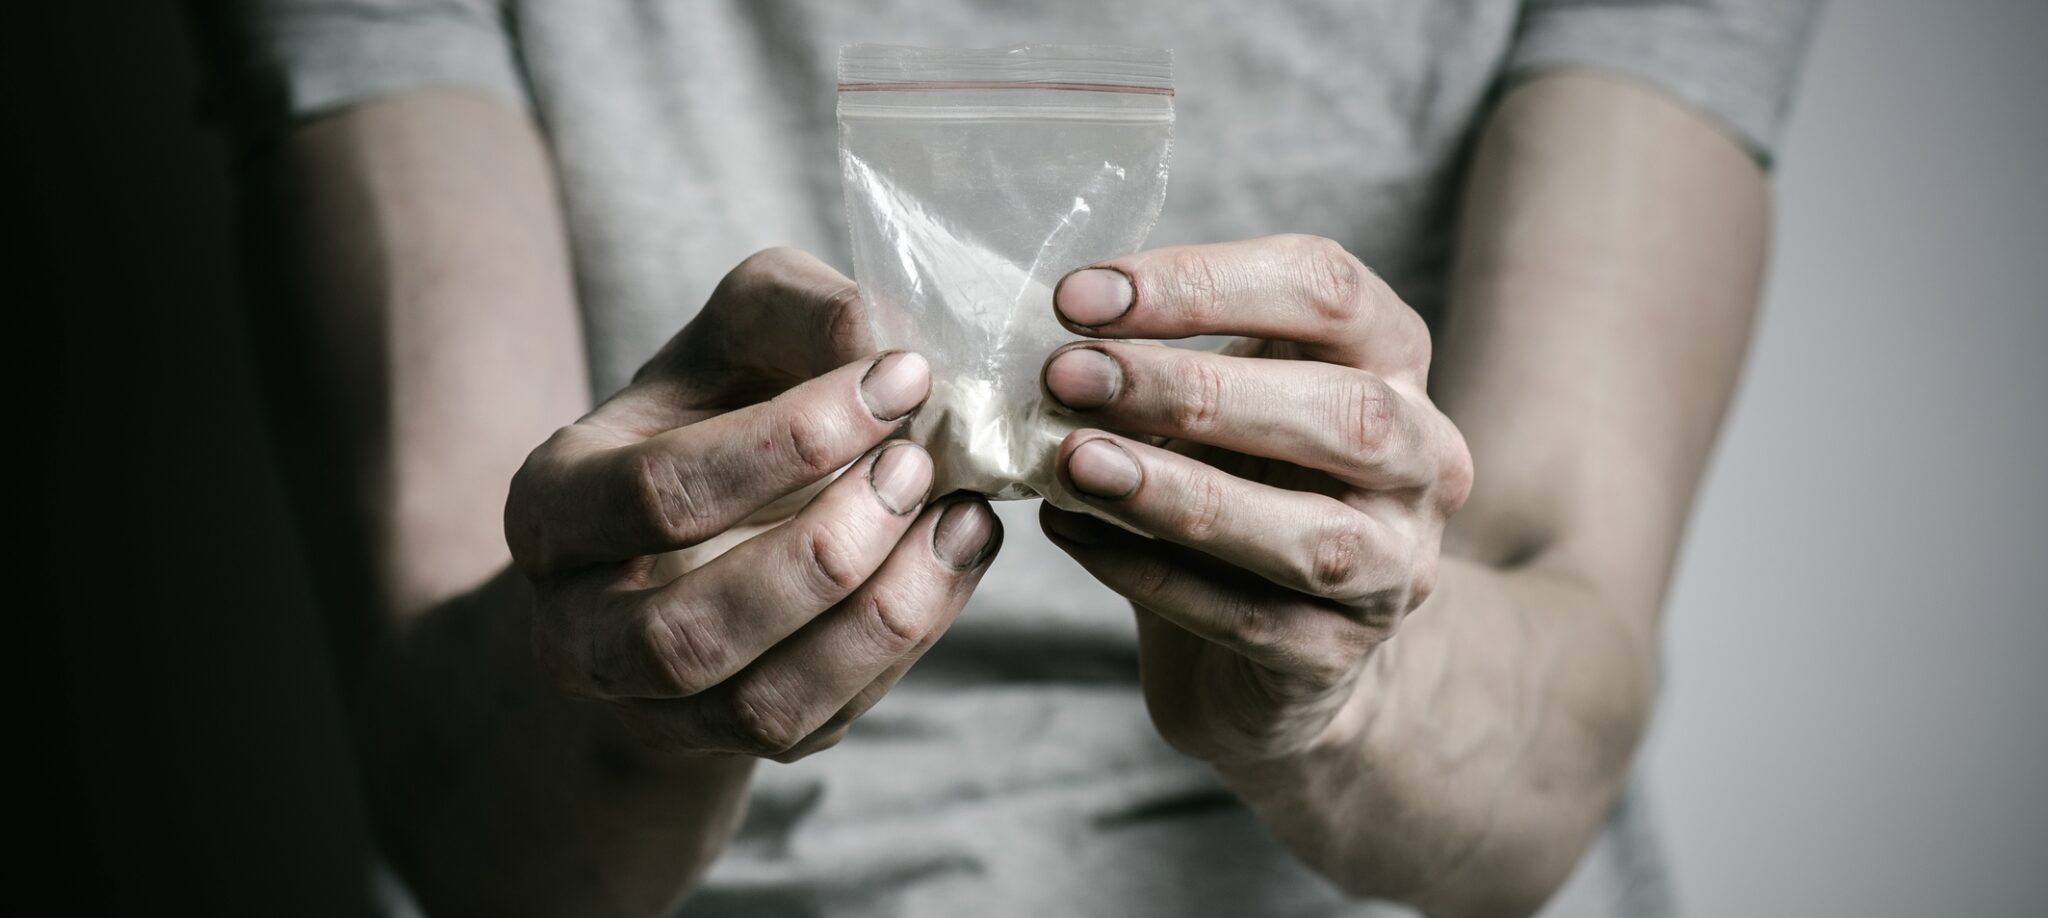 Лечение солевой наркомании: особенности и методы борьбы